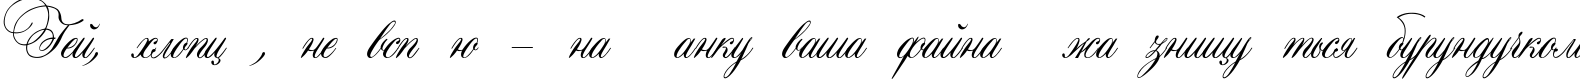 Пример написания шрифтом Aurora Script текста на украинском